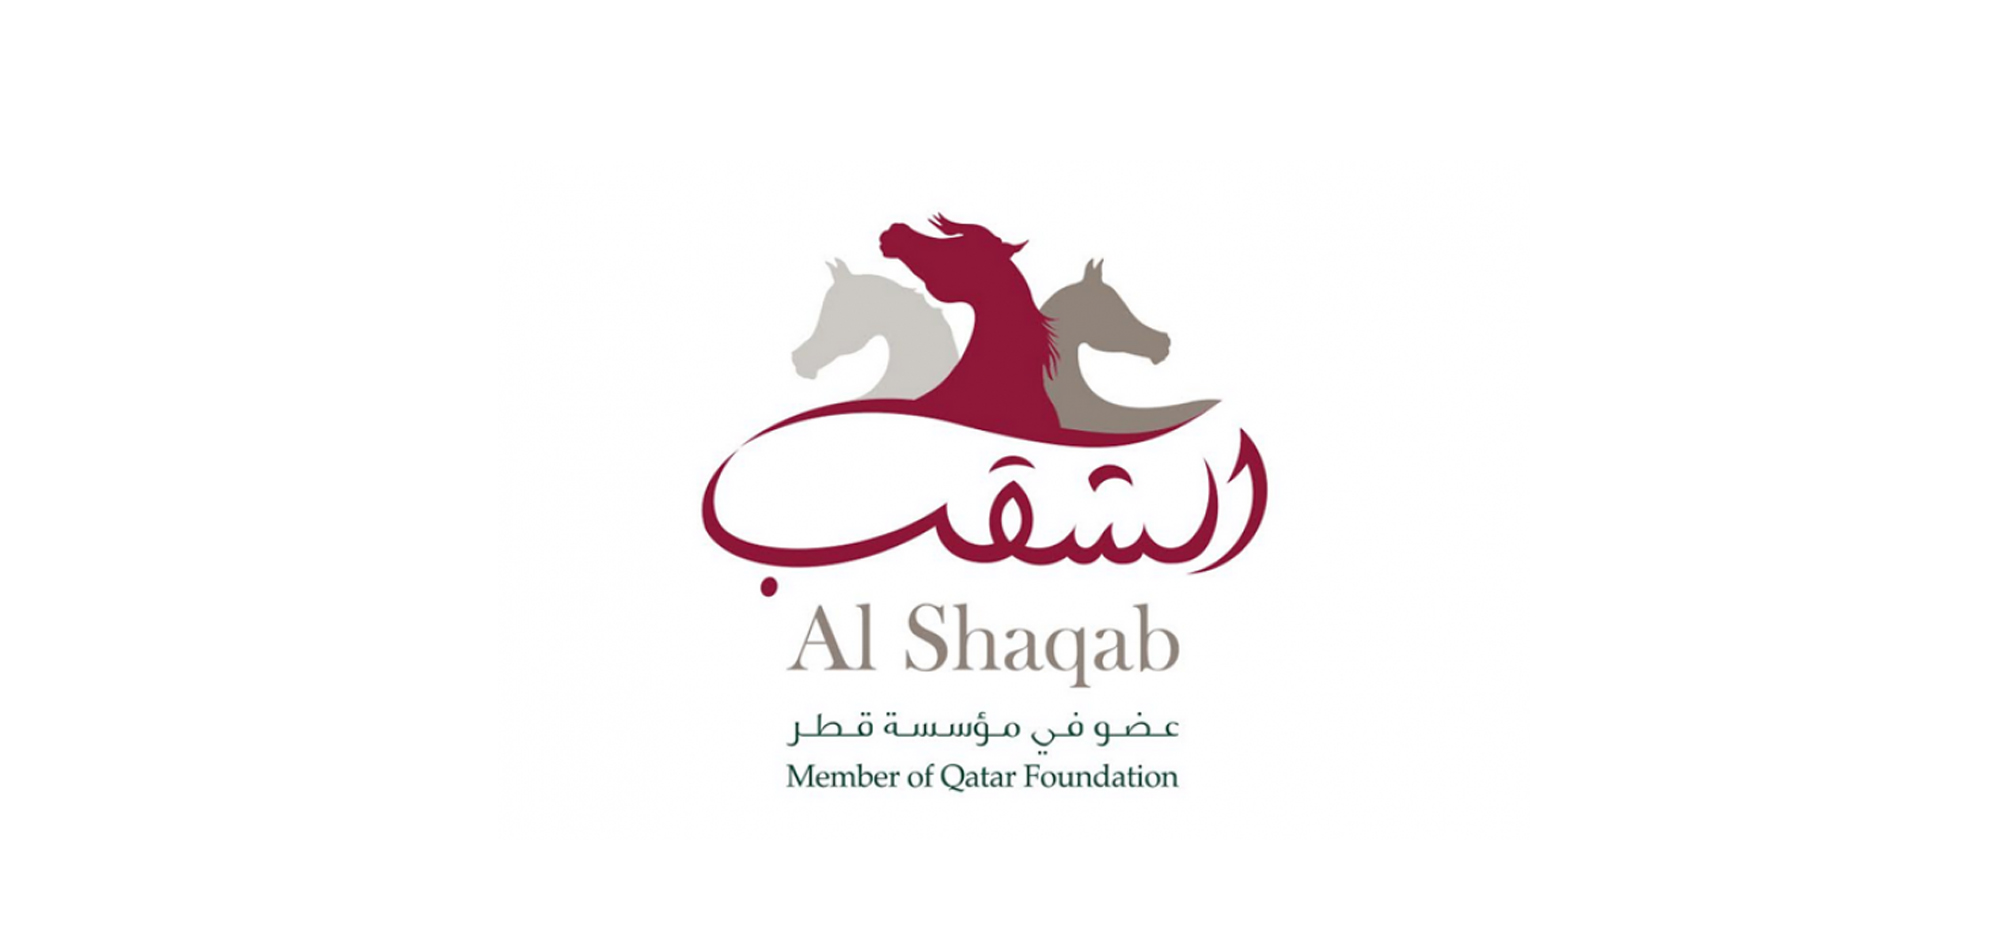 Al Shaqab Racing